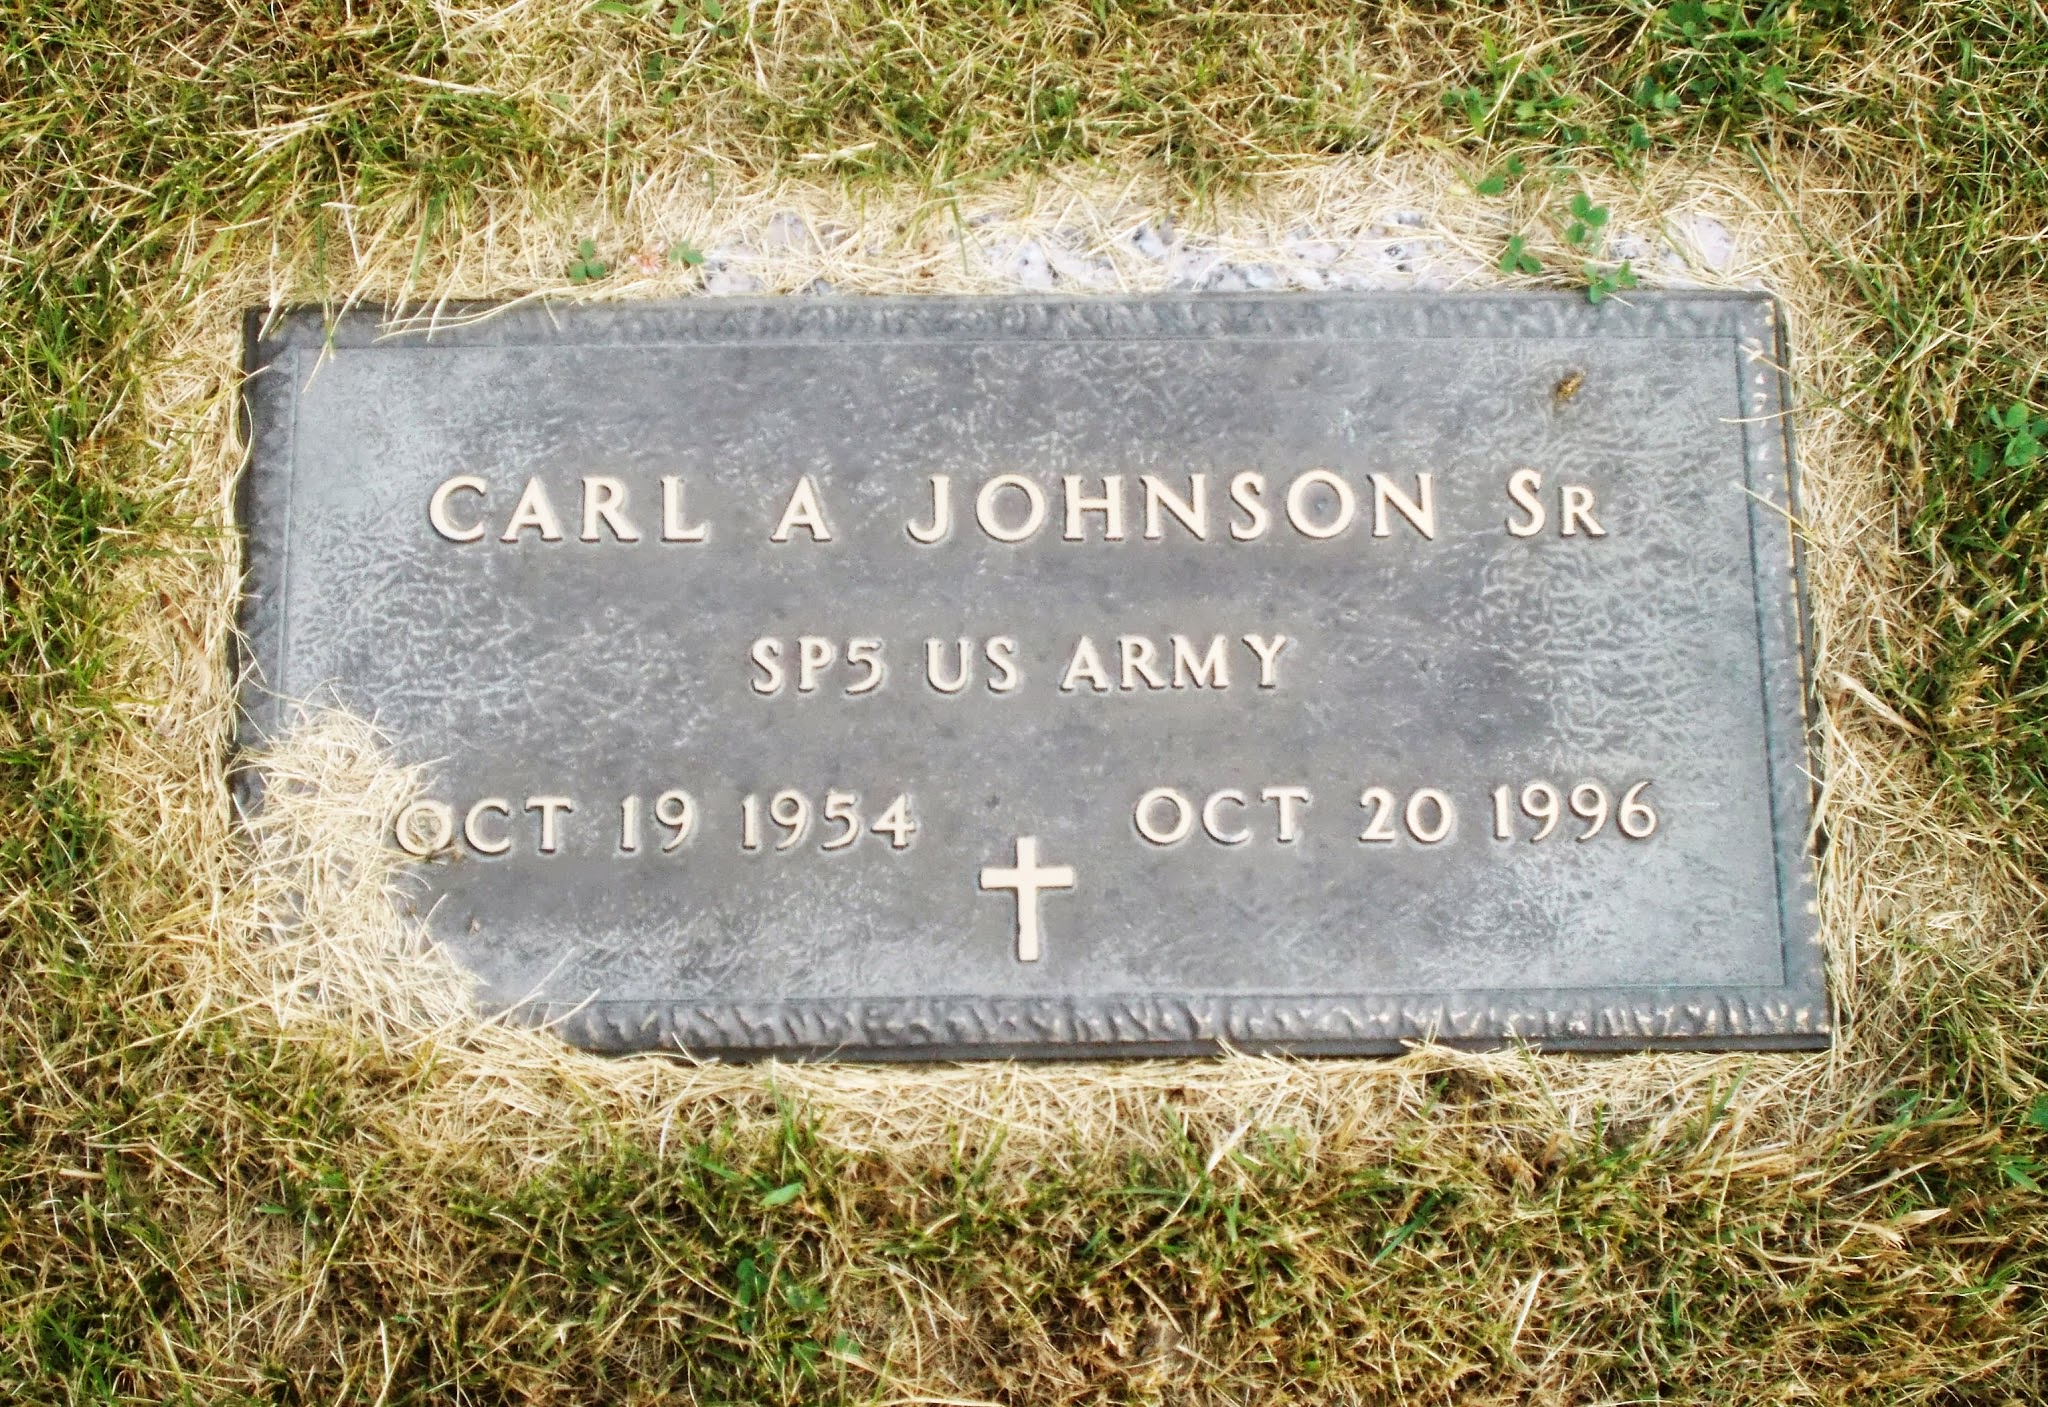 Carl A Johnson, Sr